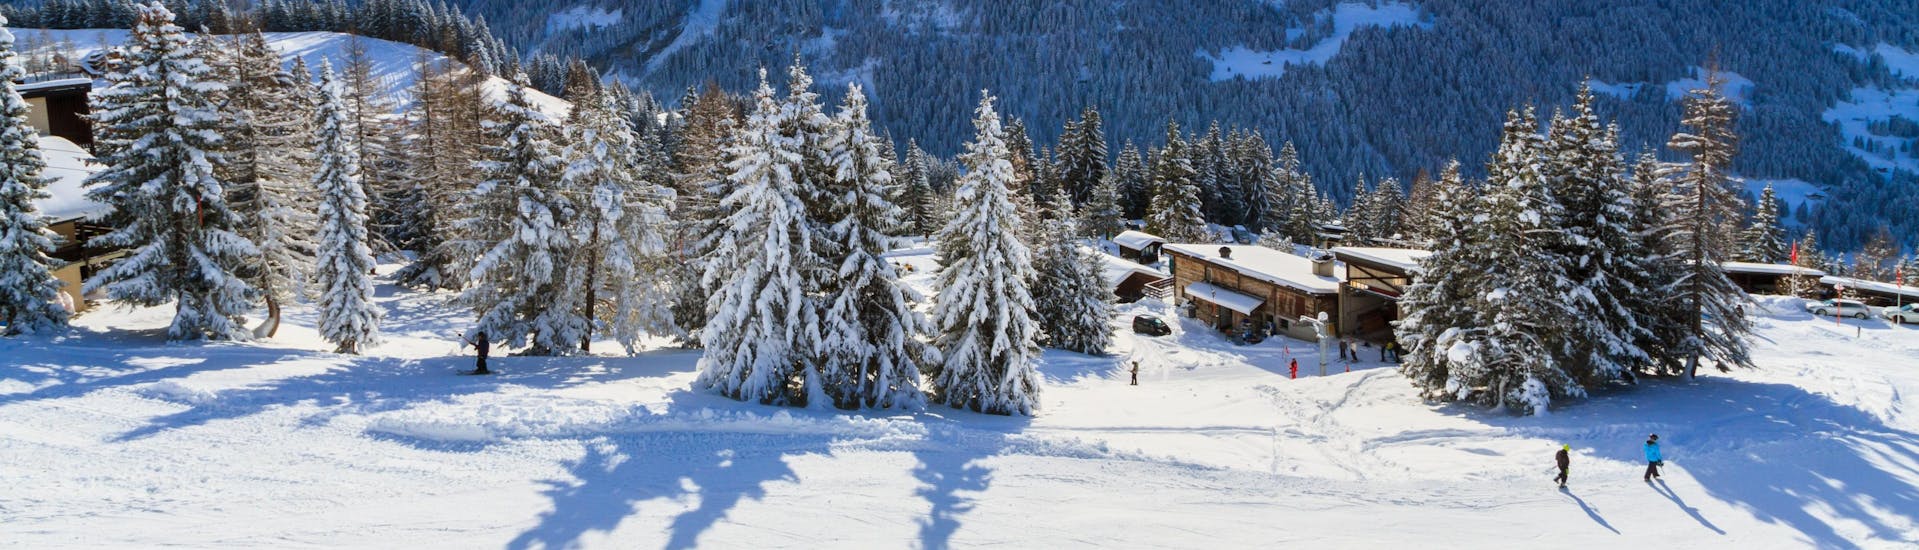 Une vue panoramique des pistes de ski et des montagnes environnantes de Villars-Gryon, une station de ski suisse populaire où les visiteurs peuvent prendre des cours de ski avec une des écoles de ski locales.